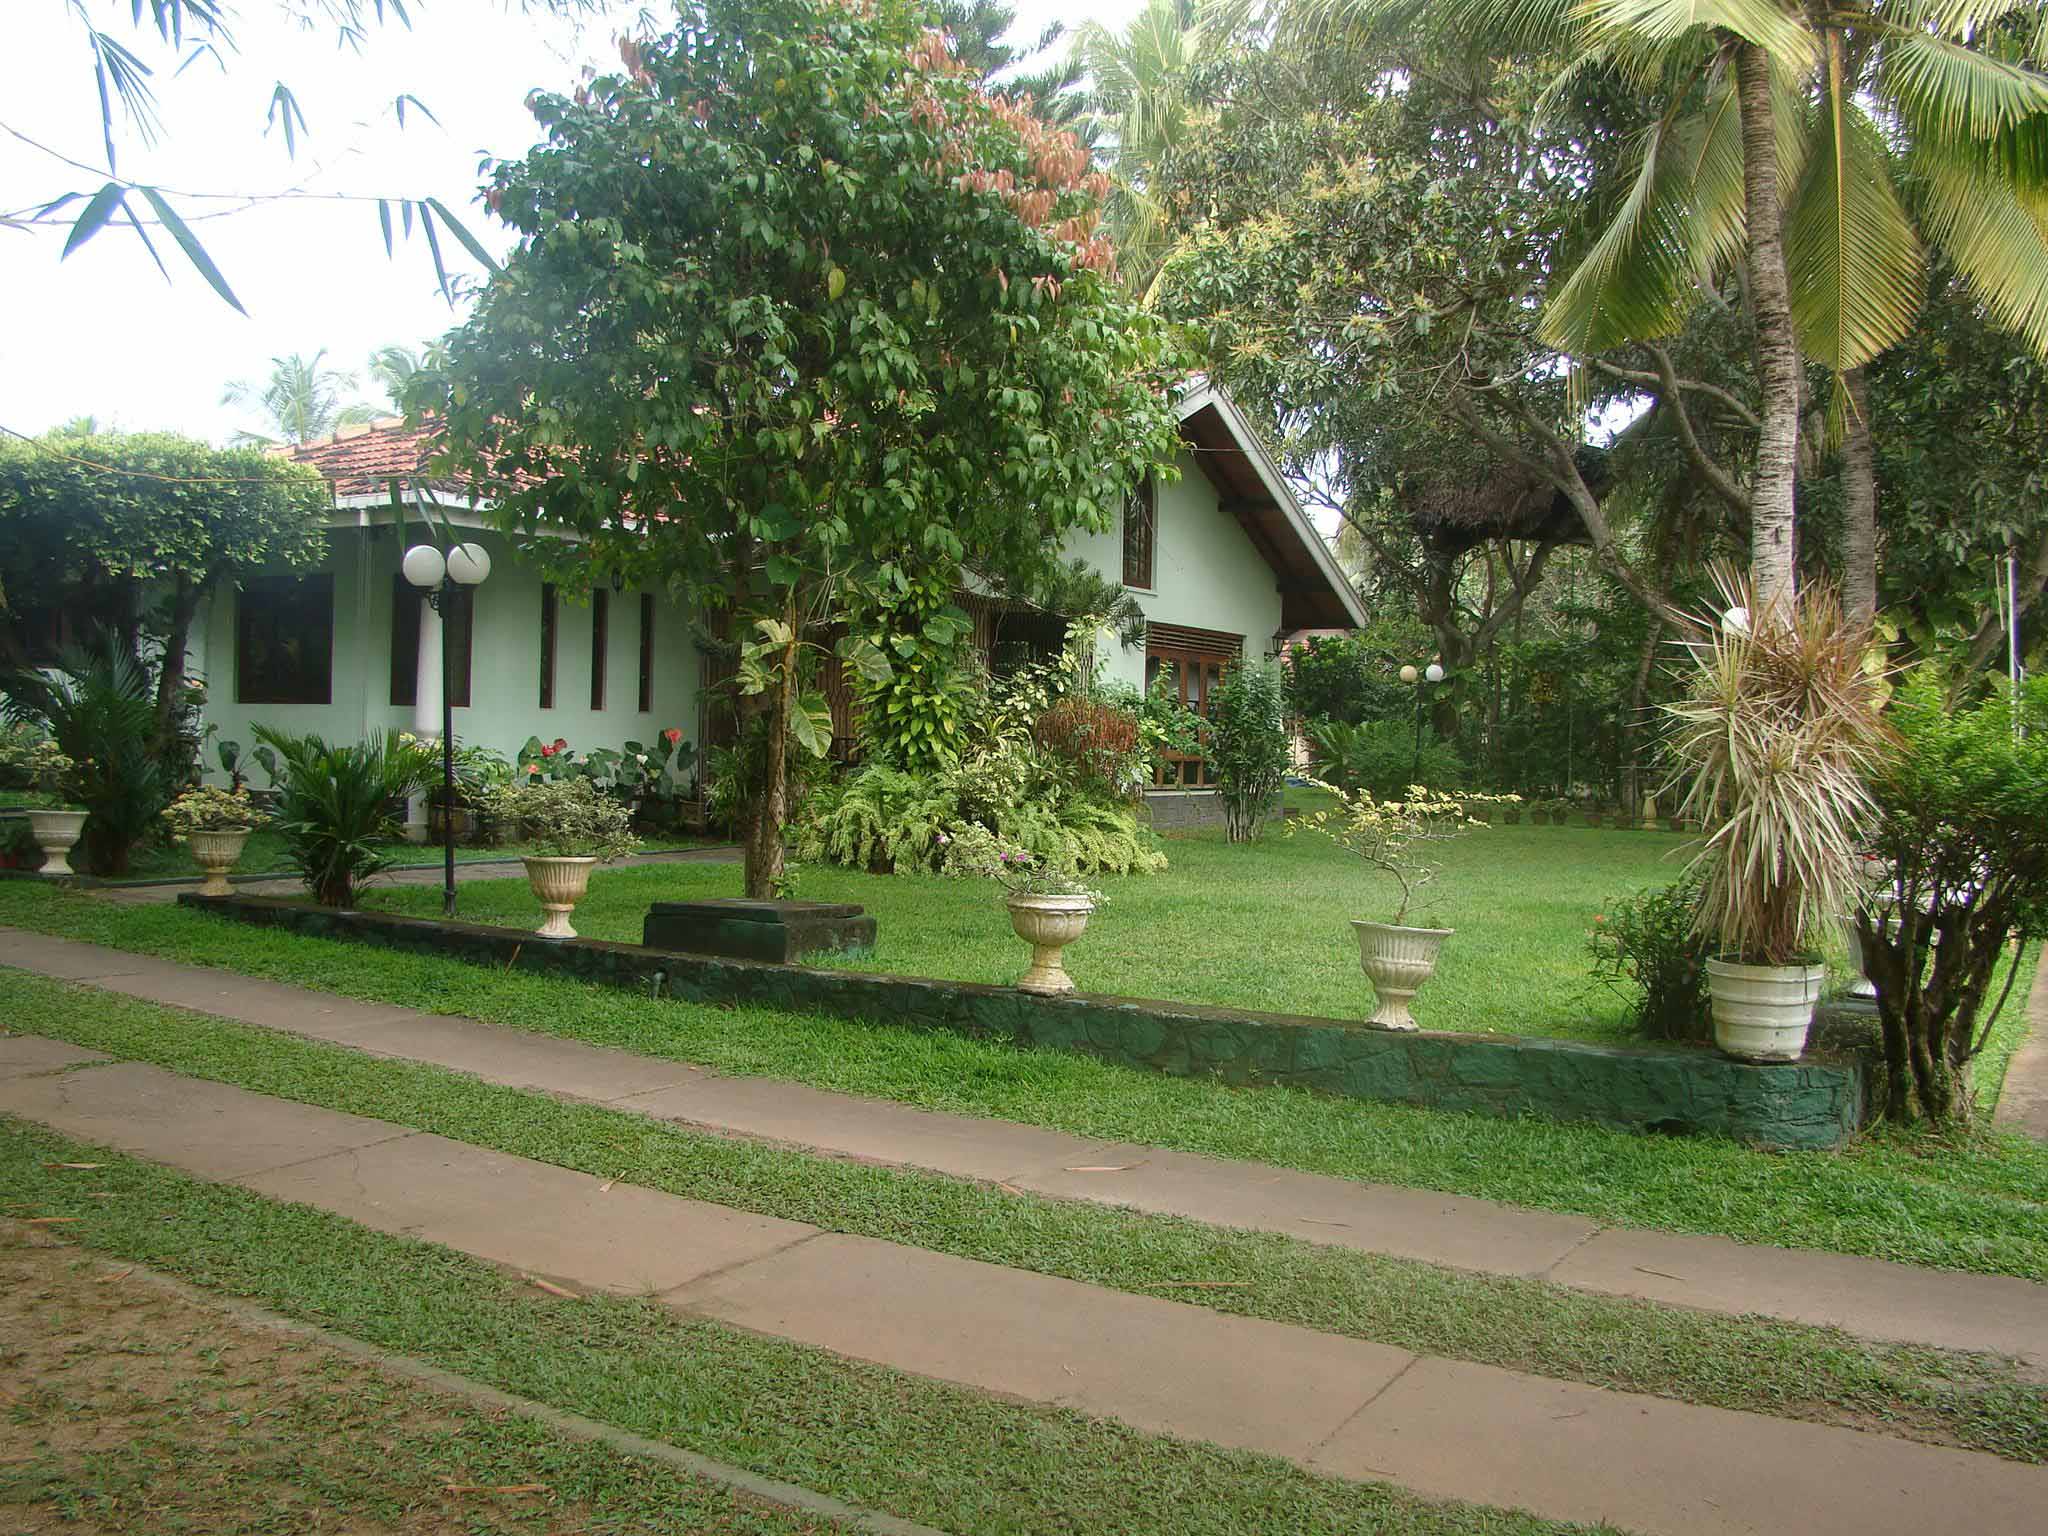 Home Garden In Sri Lanka / Garden Design Front Of House Sri Lanka